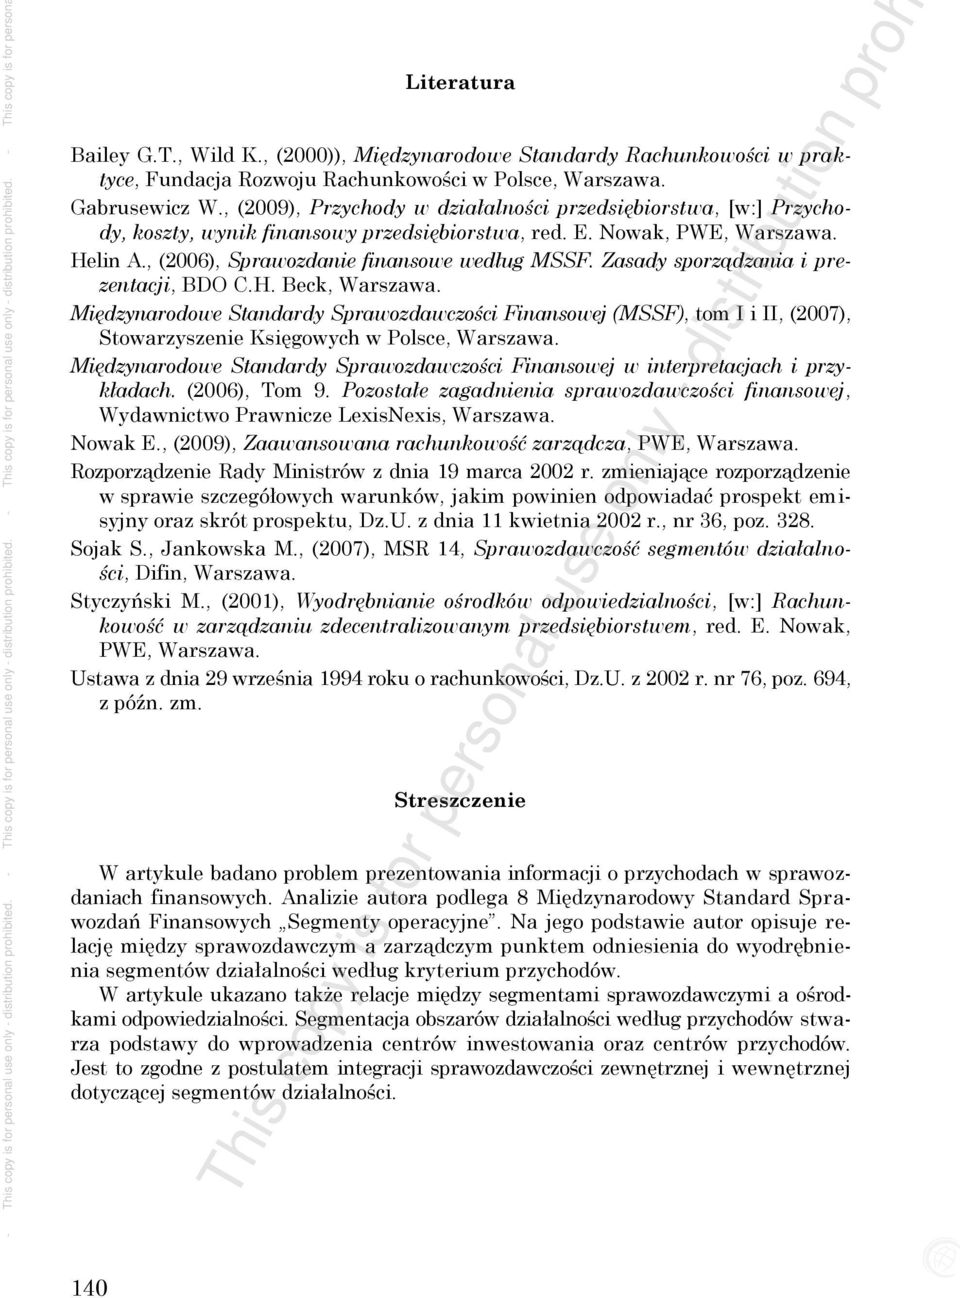 , (2006), Sprawozdanie finansowe według MSSF. Zasady sporządzania i prezentacji, BDO C.H. Beck, Warszawa.